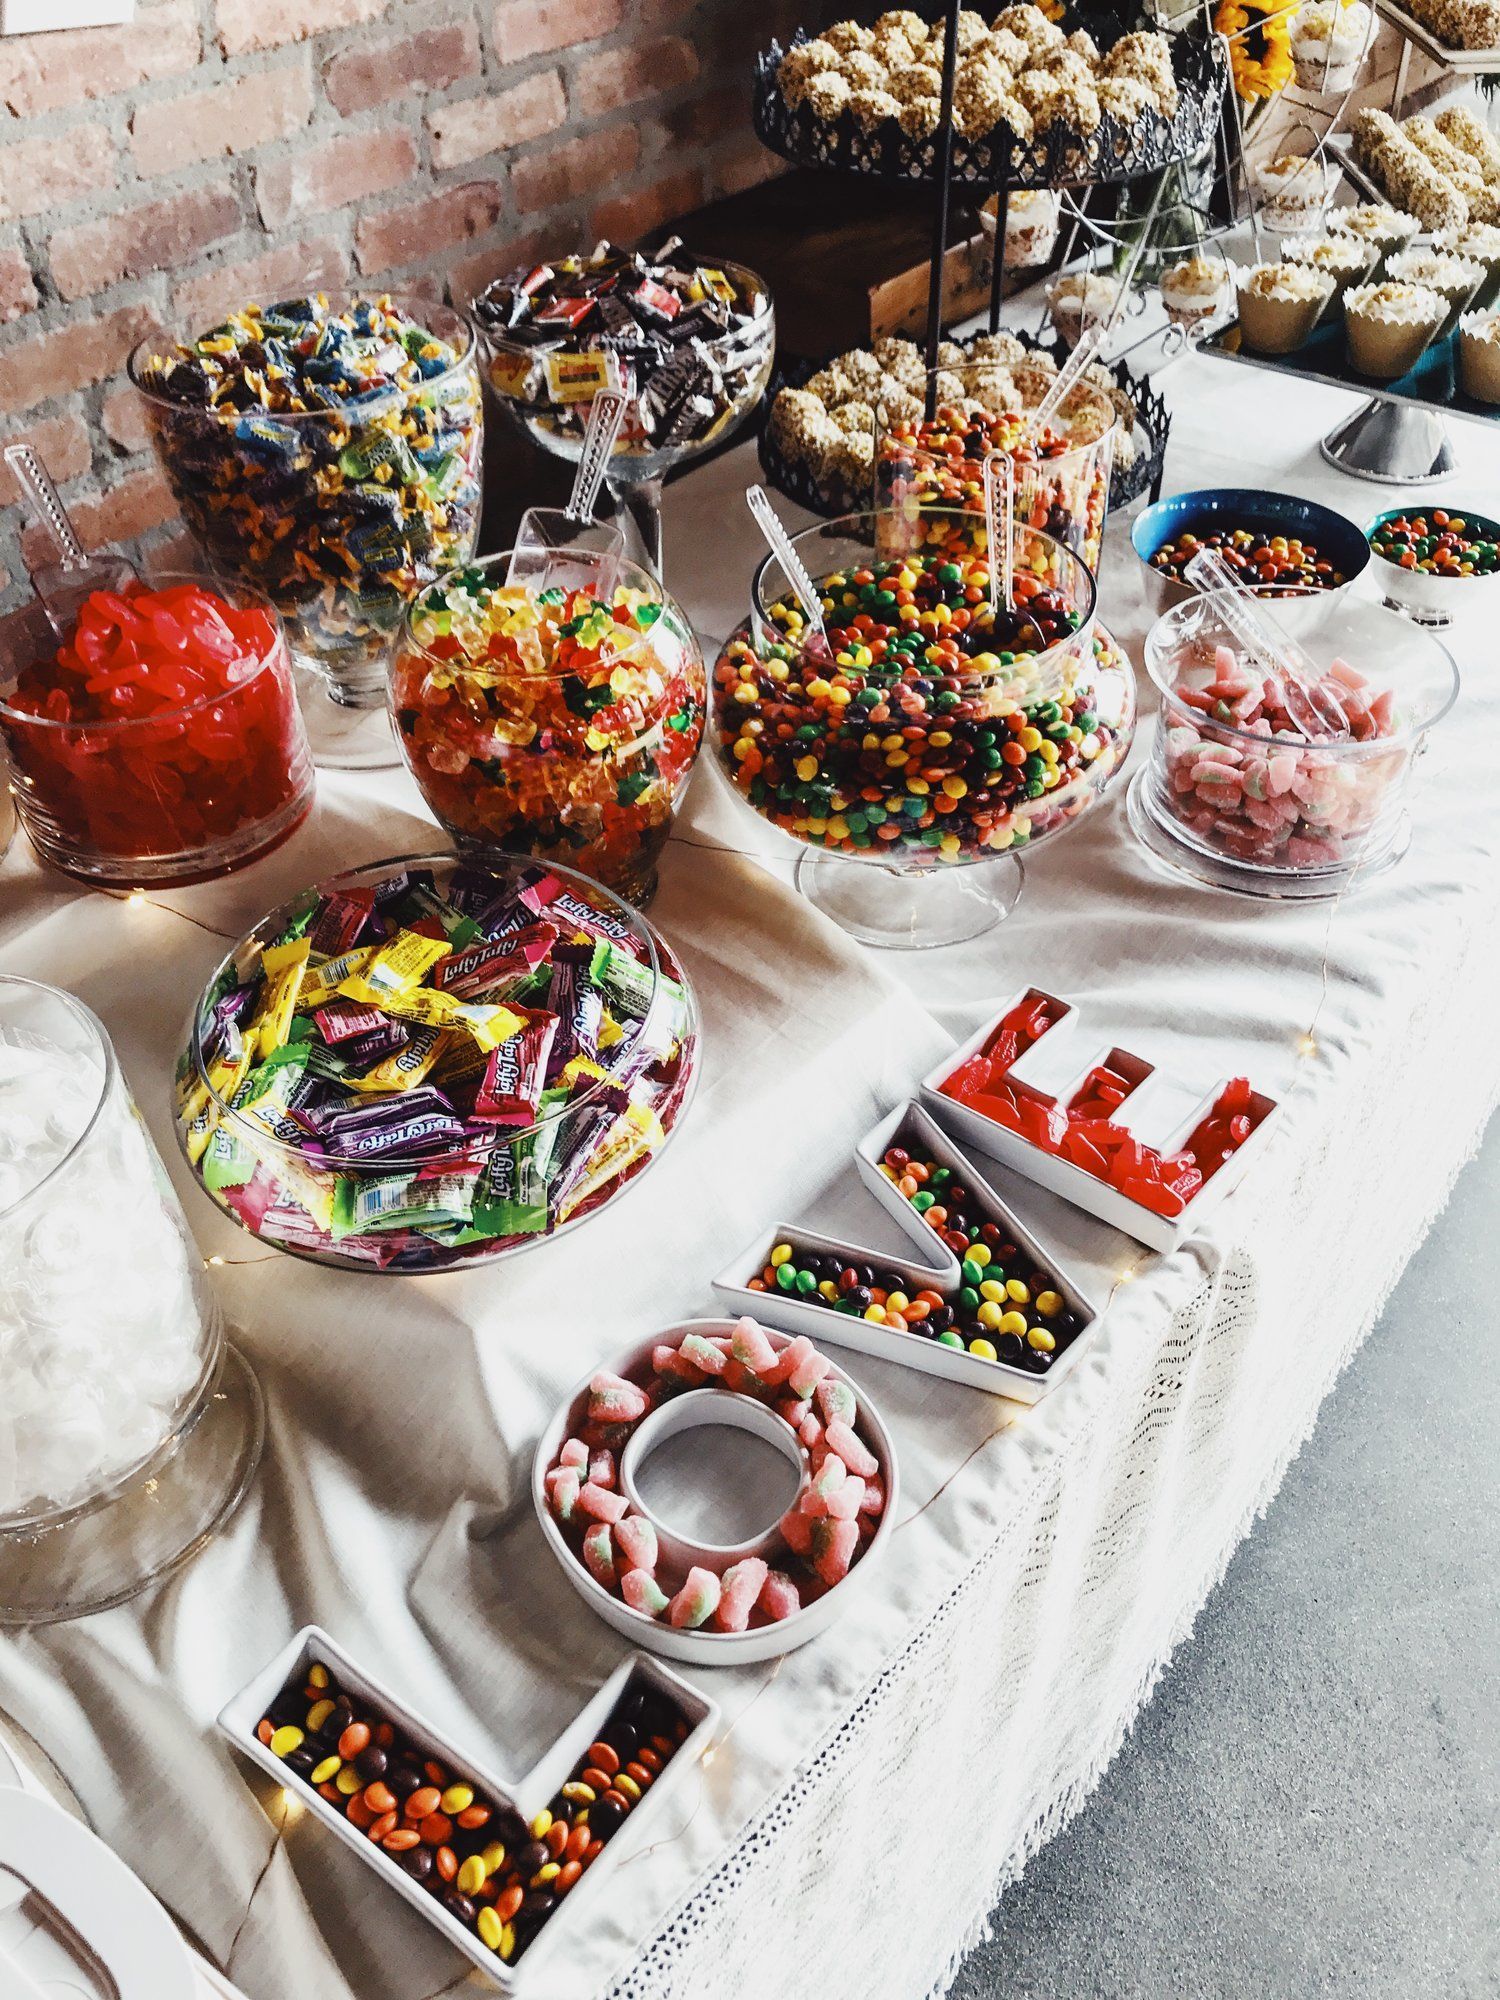 Wedding Candy Bar Ideas